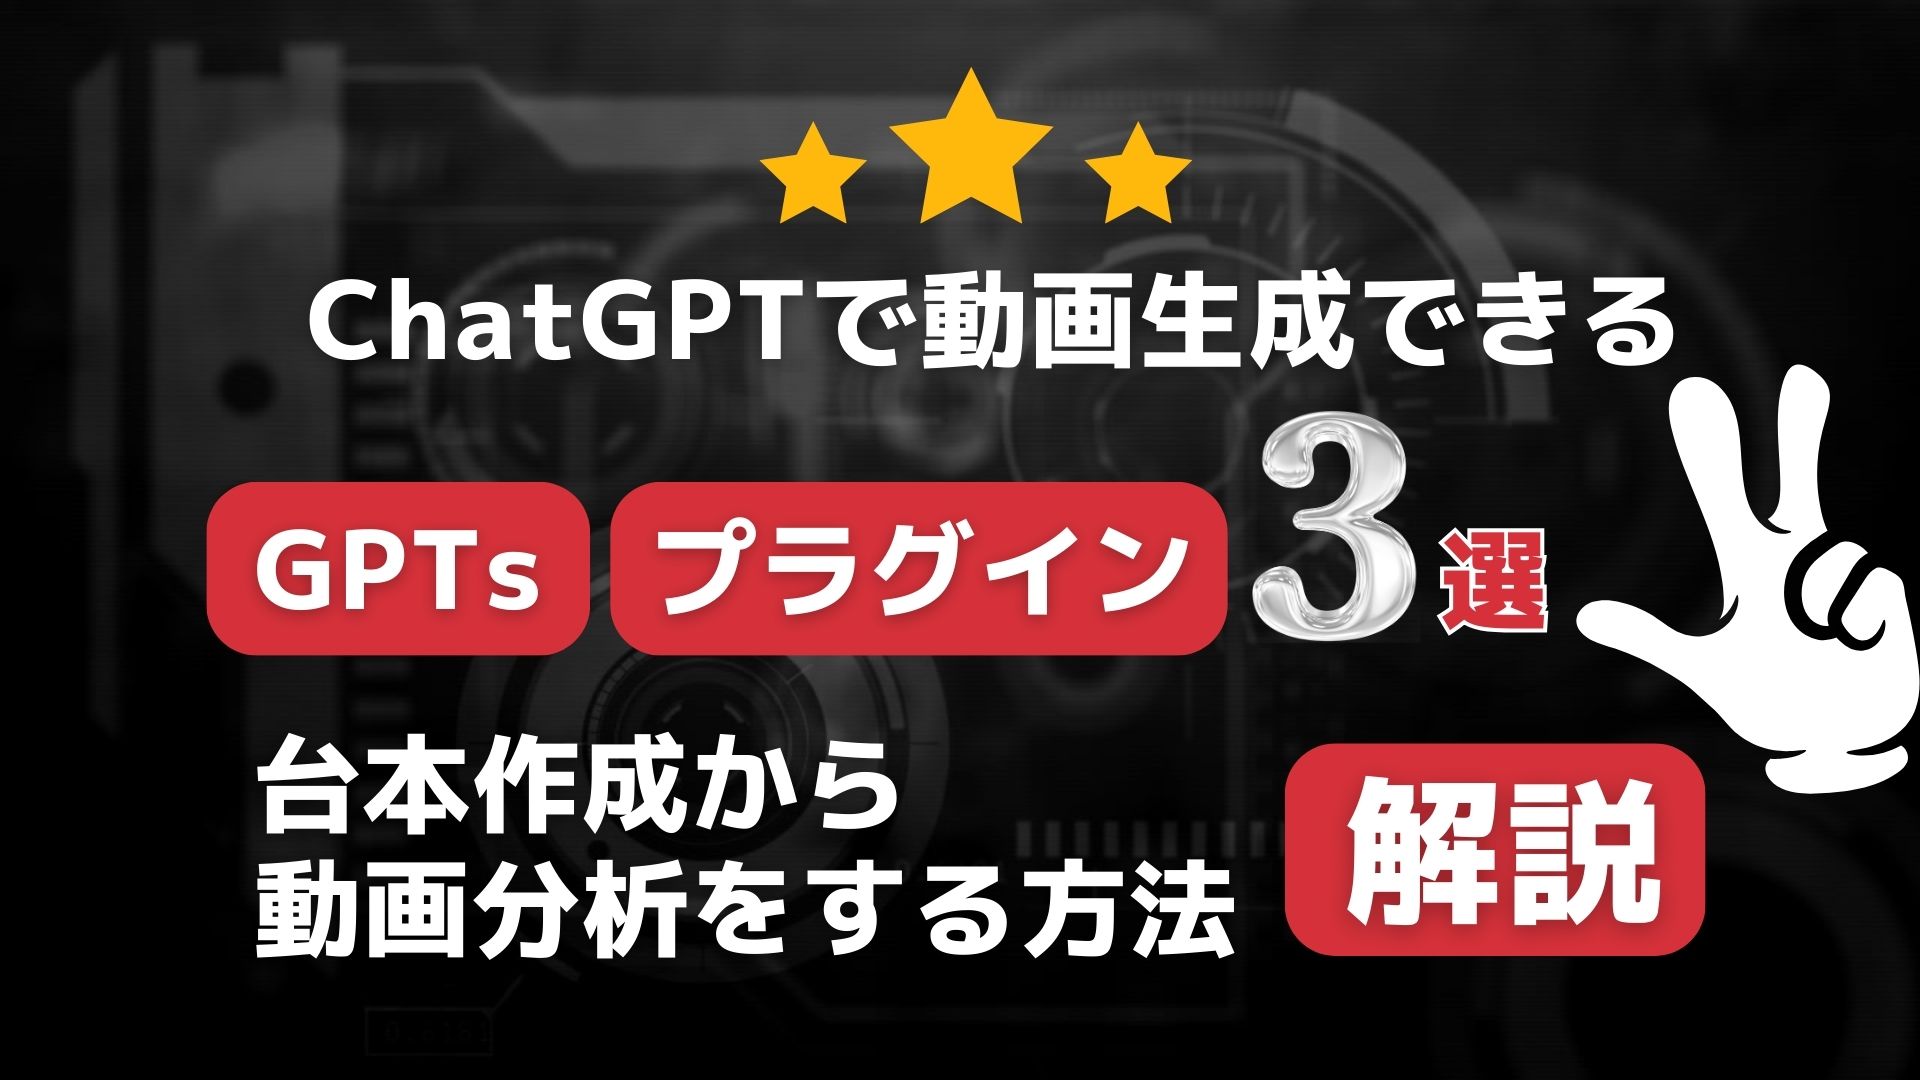 ChatGPT GPTs プラグイン 解説